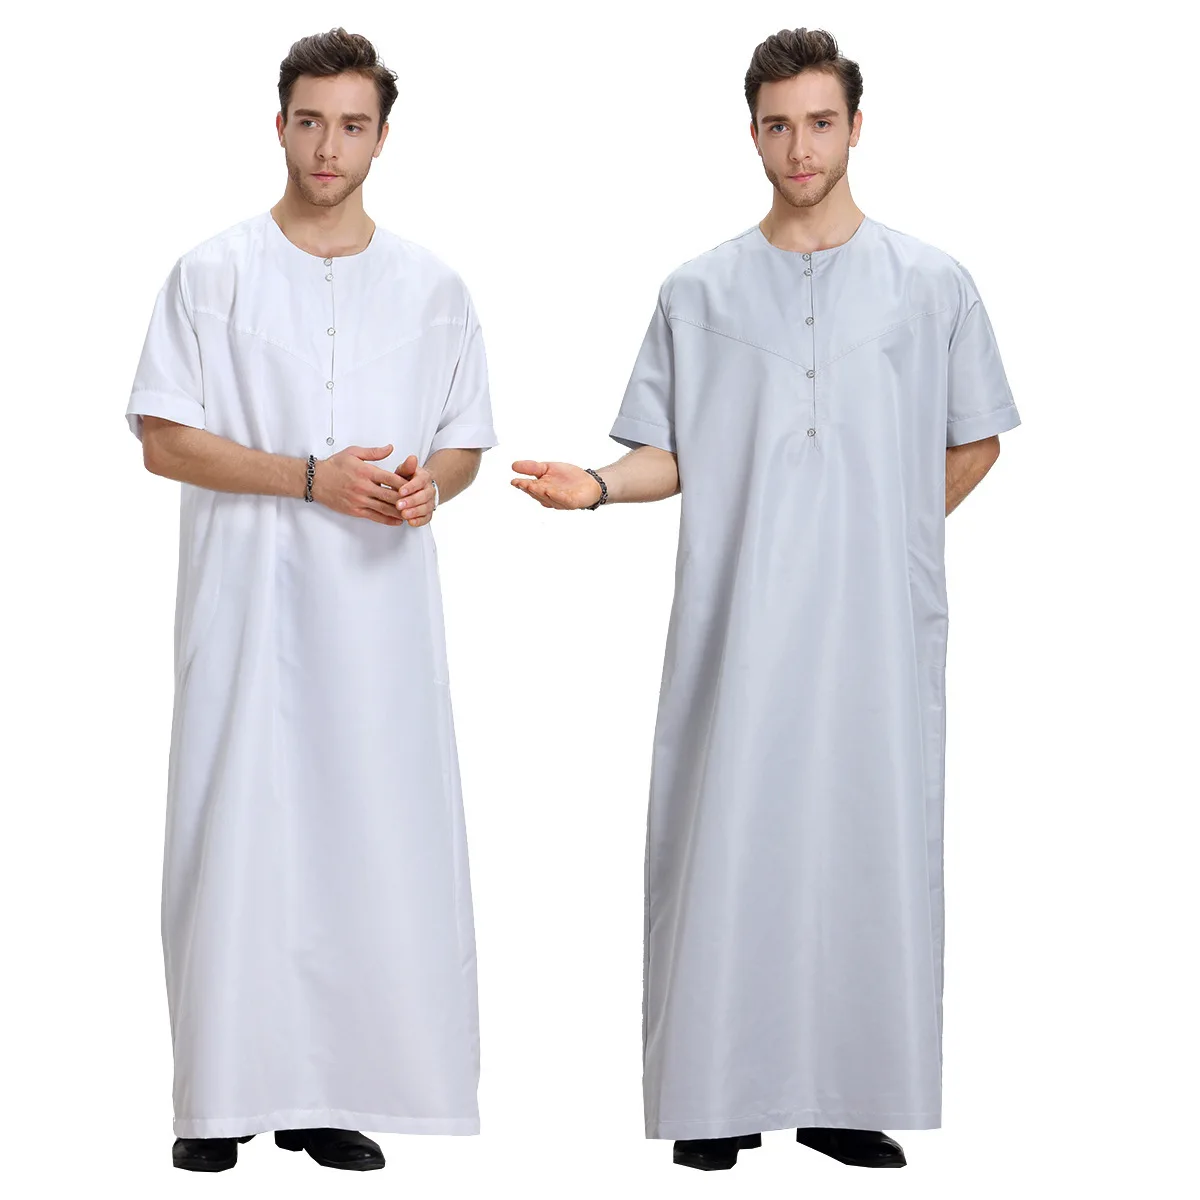 

Islamic Clothing Men djellaba man Muslim Men Saudi Arabia Pakistan Kurta Muslim Costumes Muslim dress Jubba Thobe